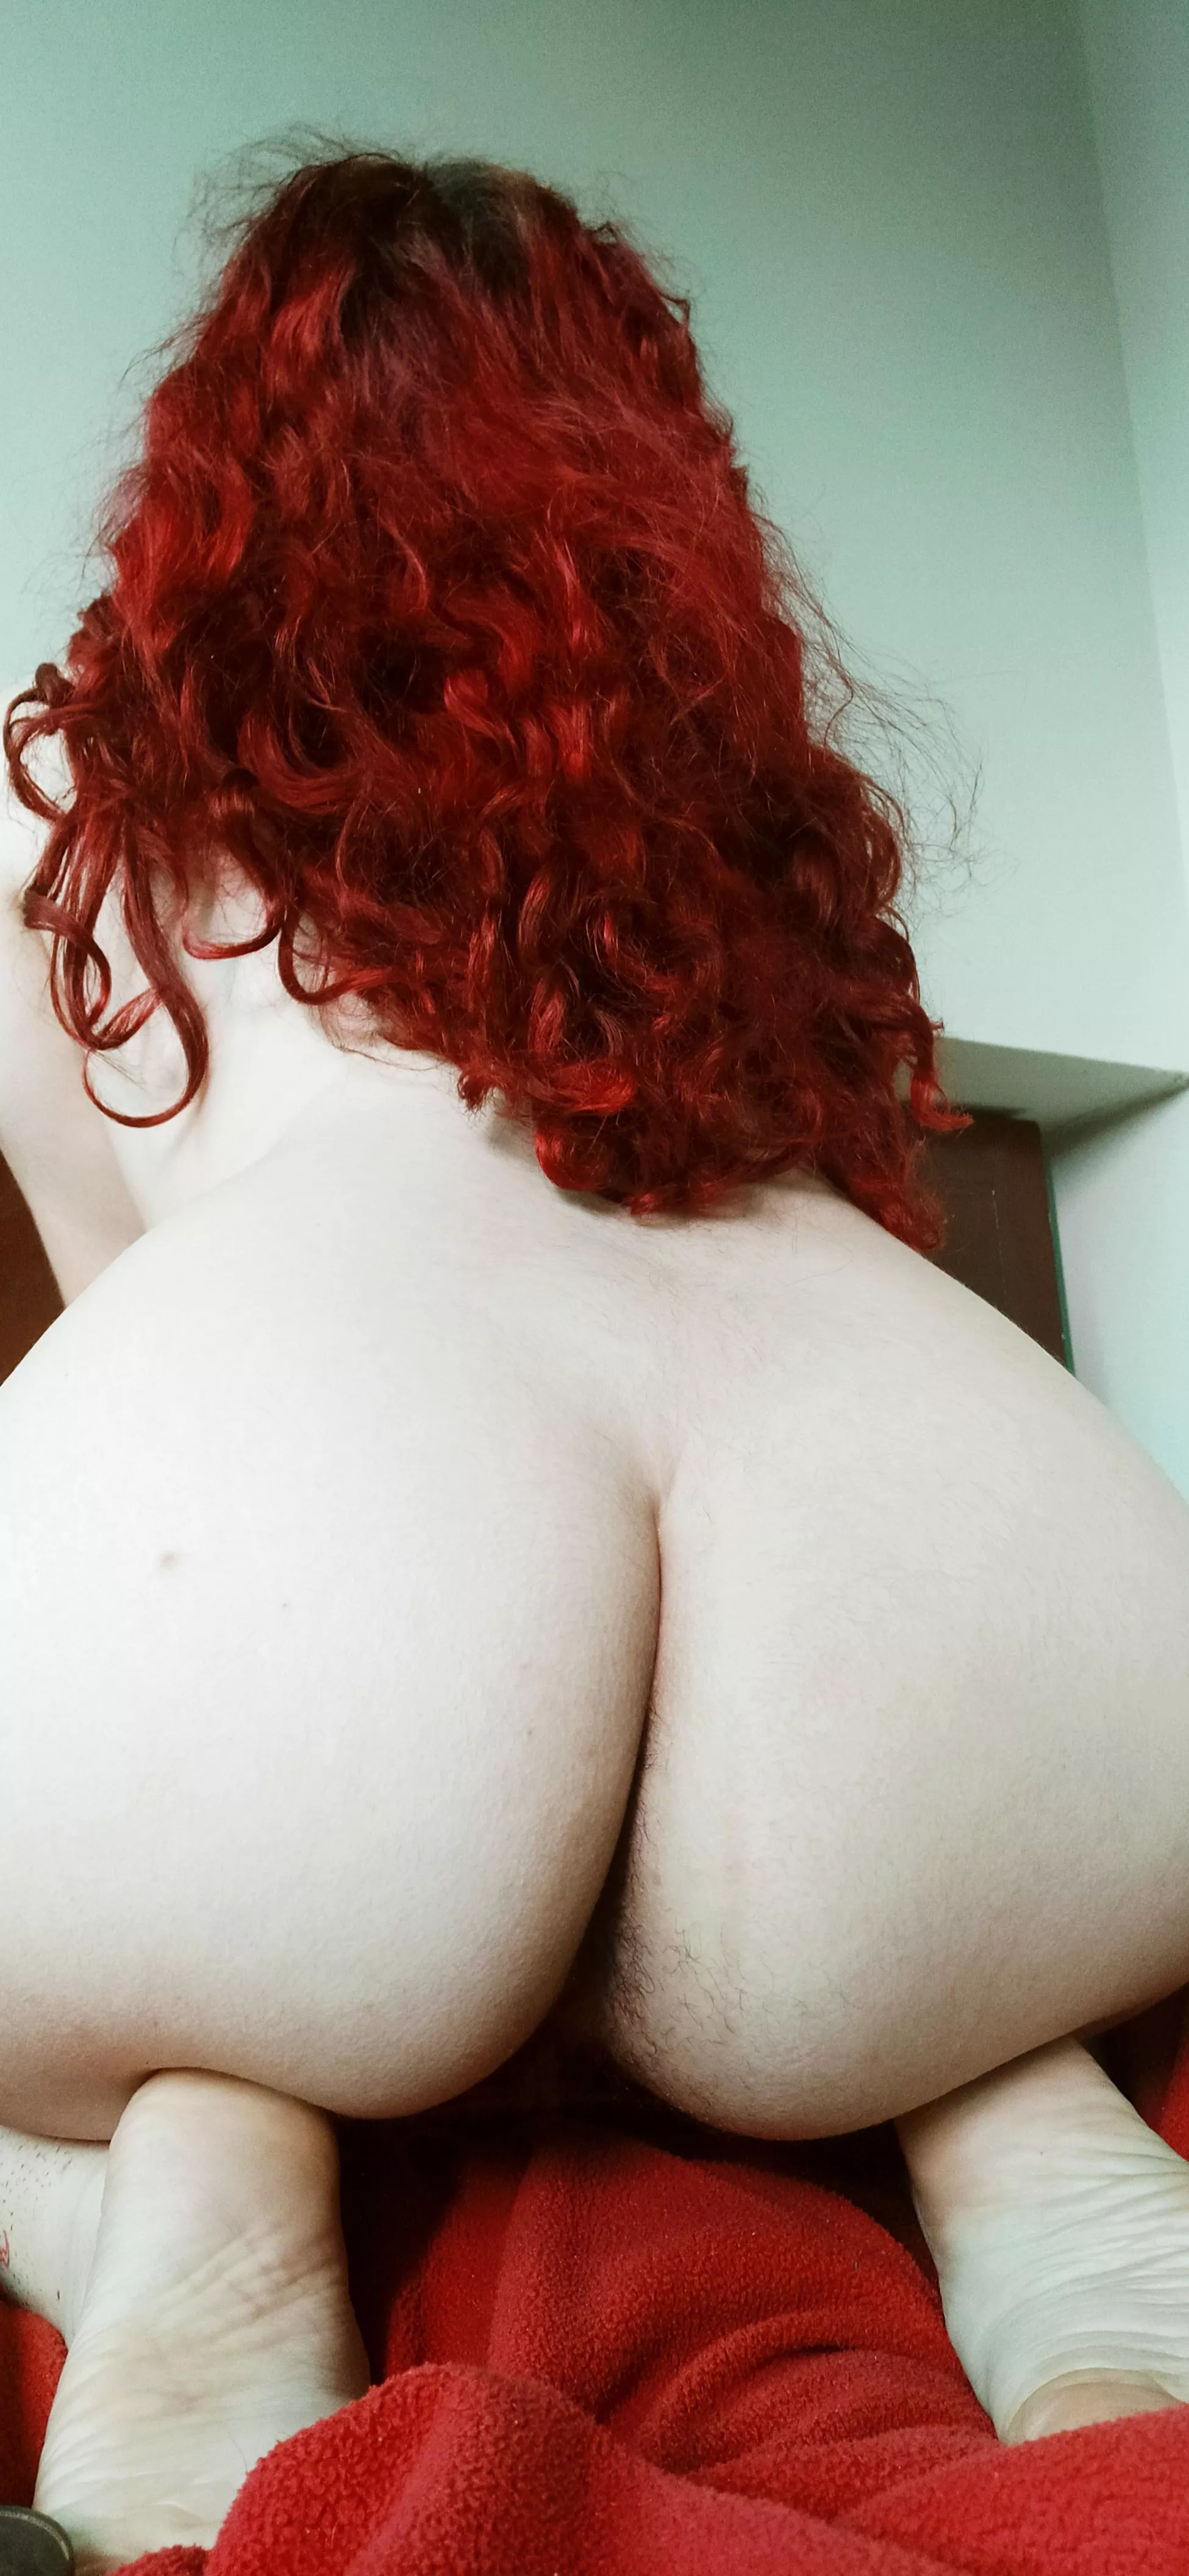 Nude Redhead Hairy